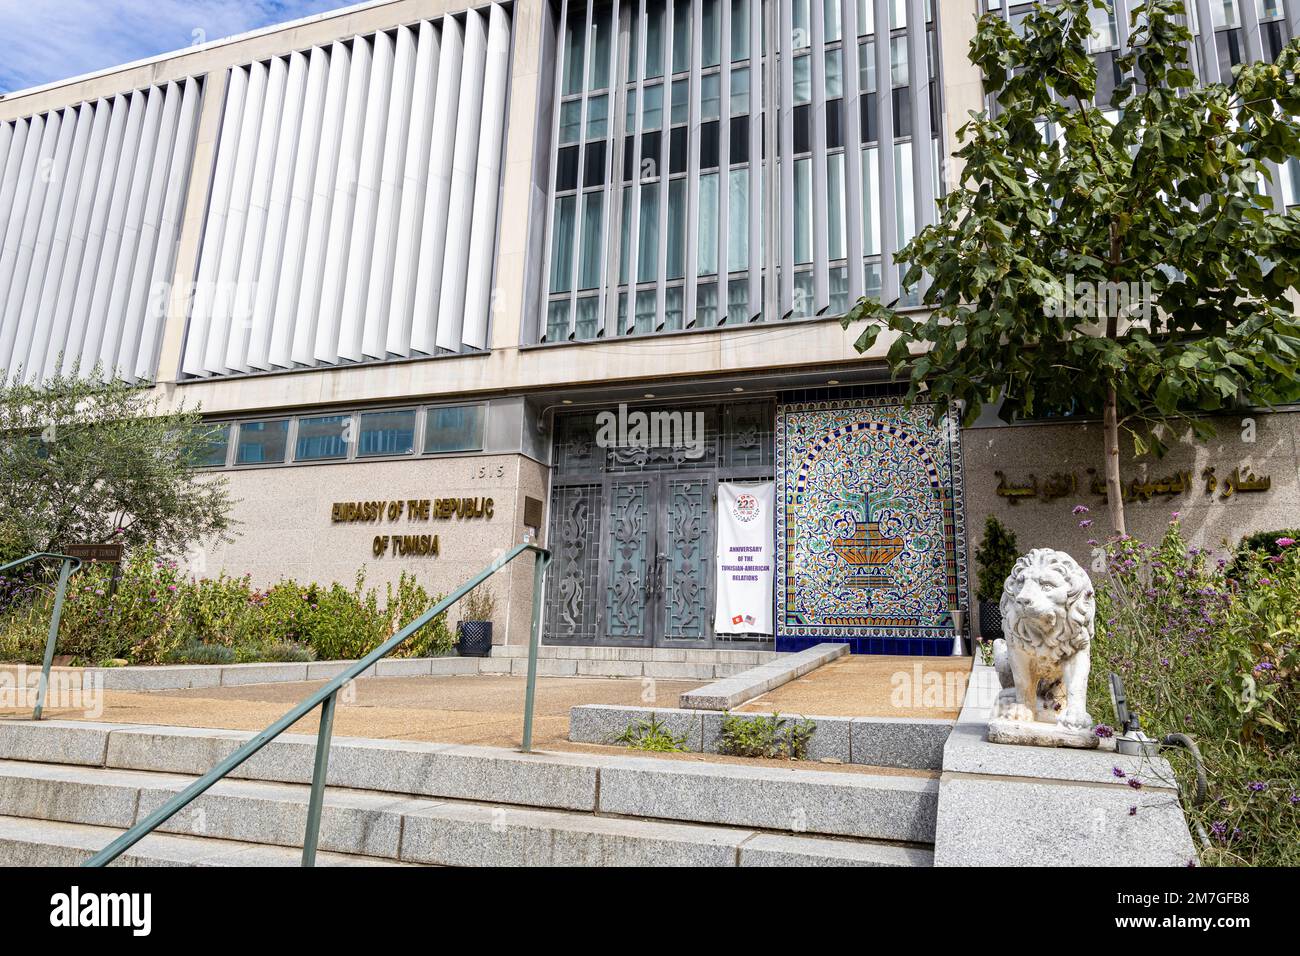 Tunisia embassy Banque de photographies et d'images à haute résolution -  Alamy